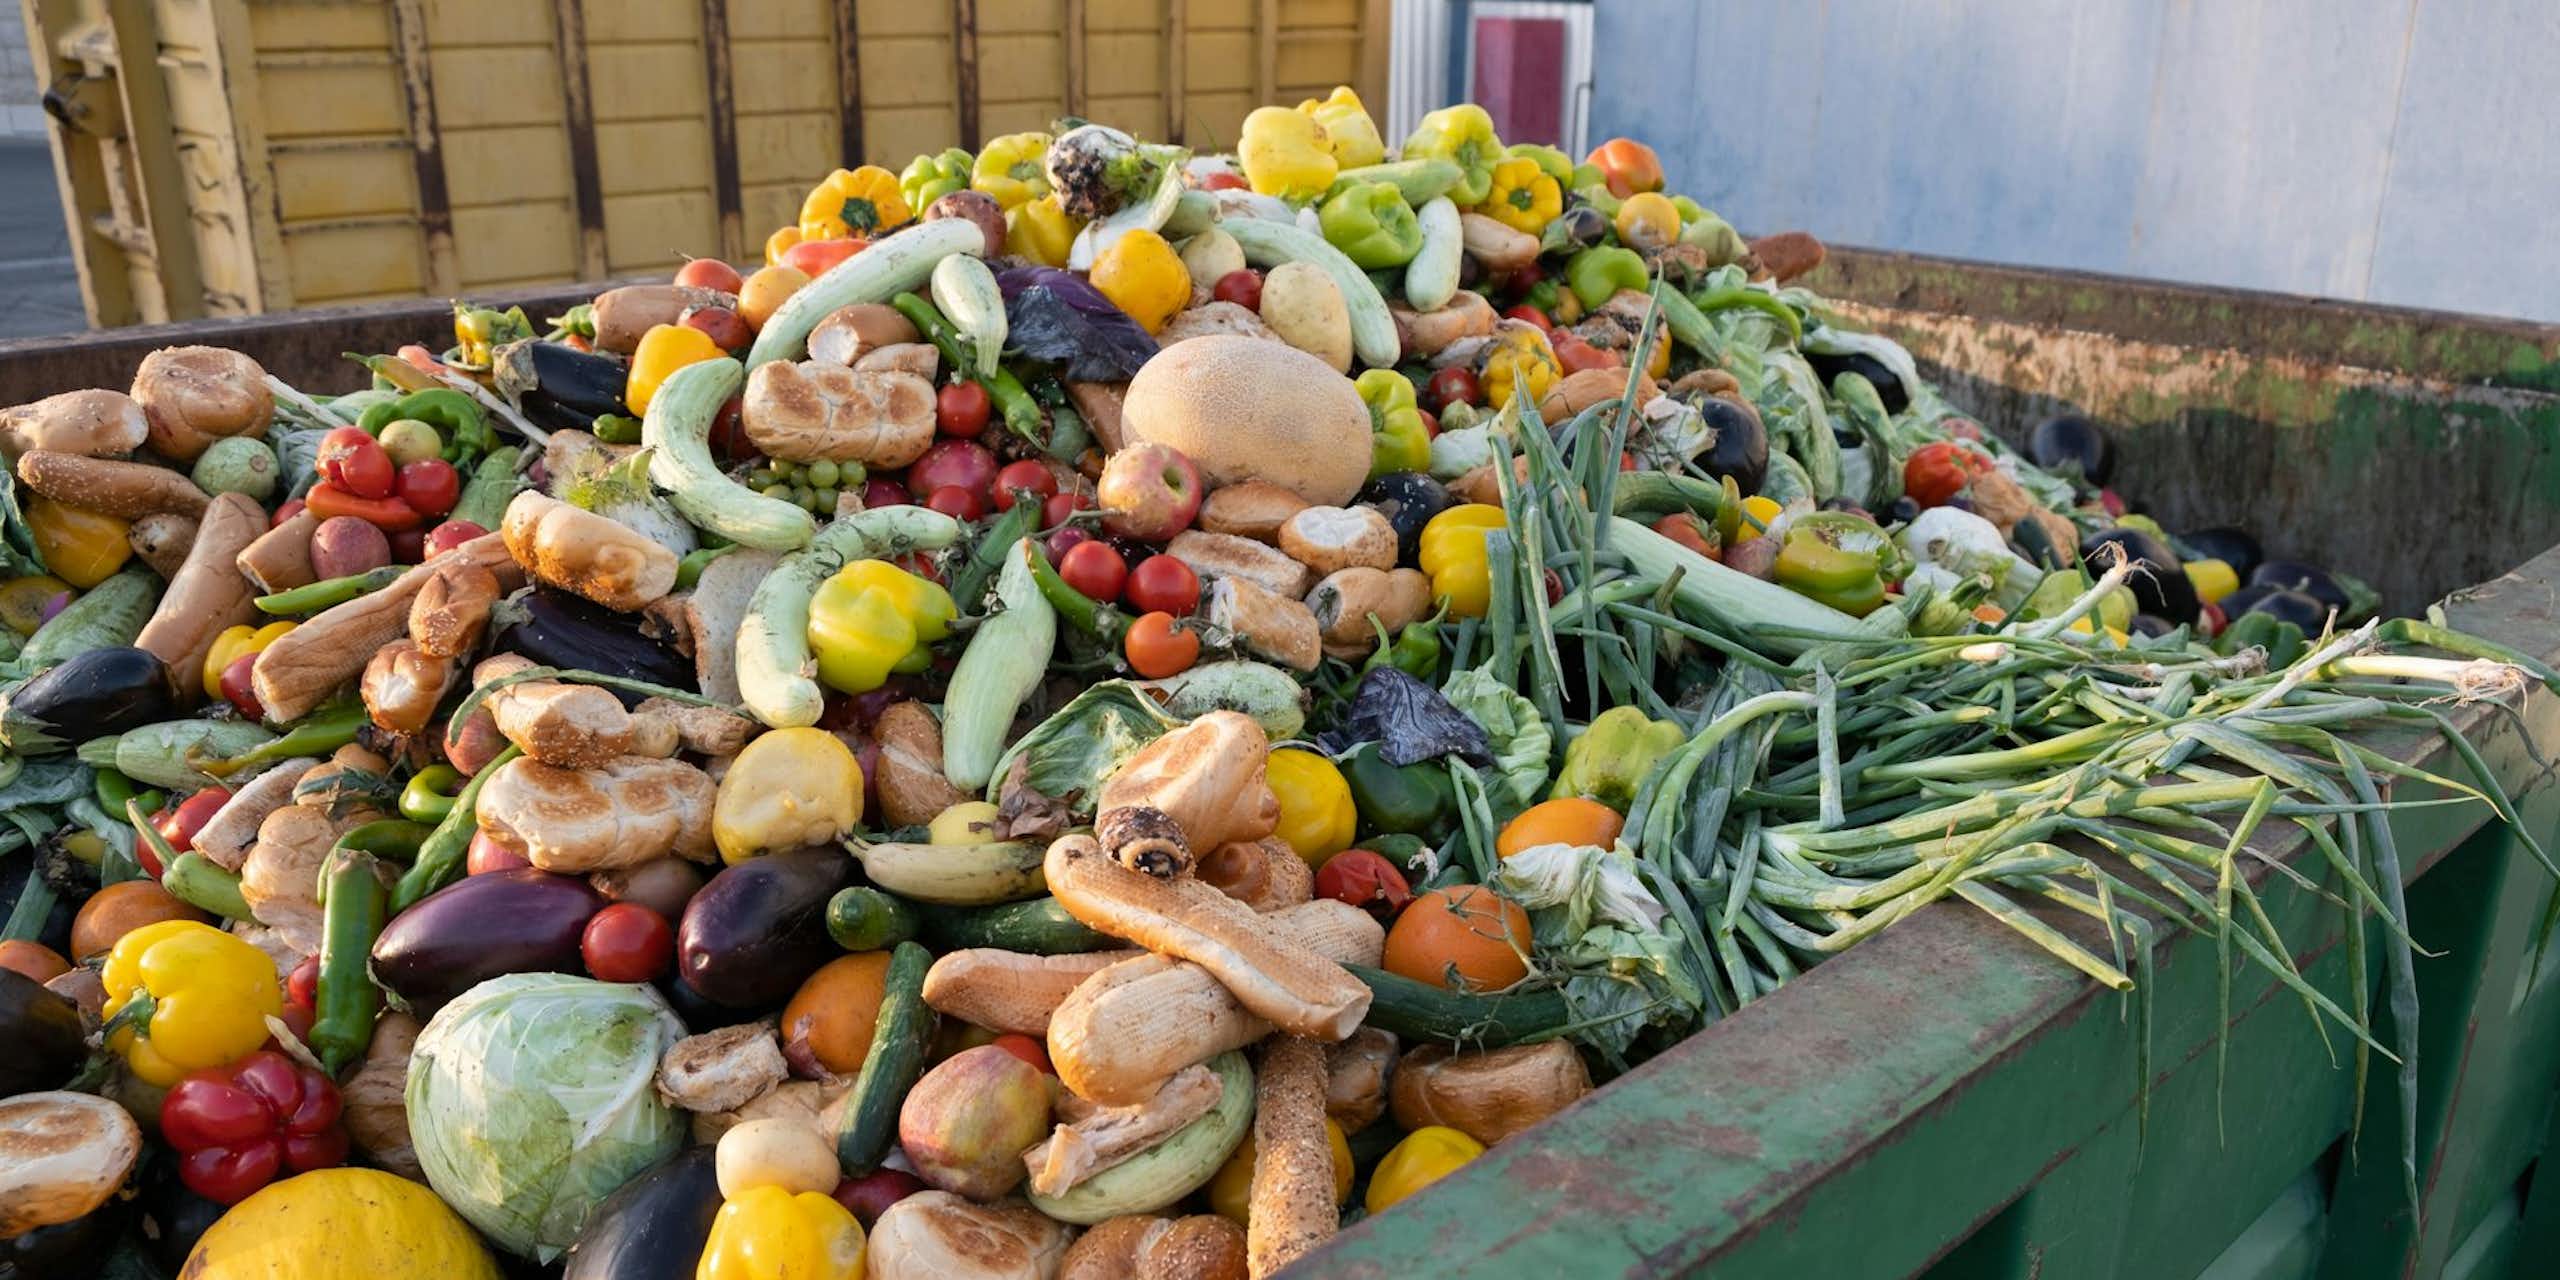 Vegetables piled in a garbage bin.